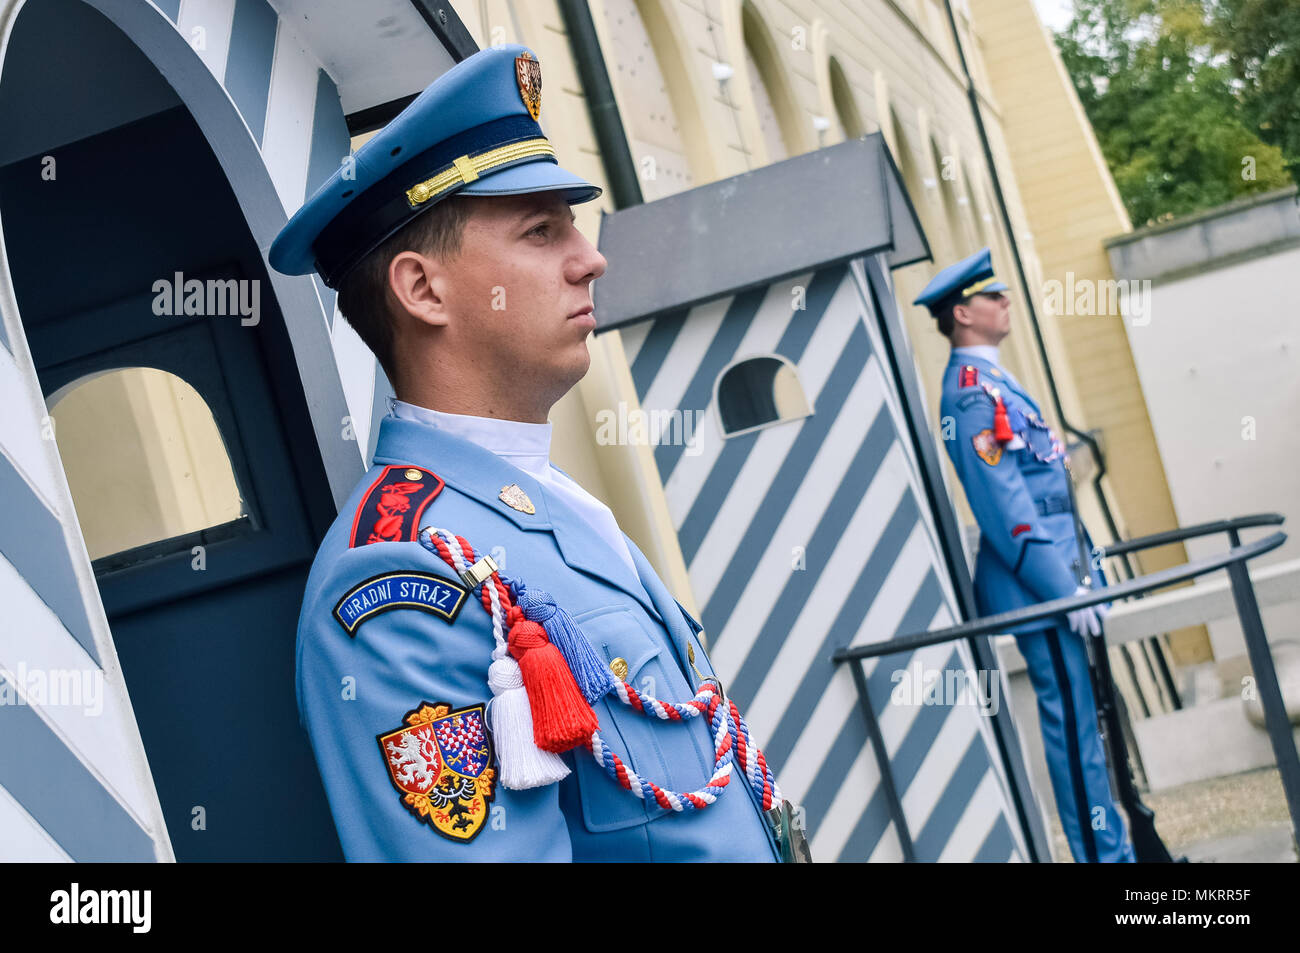 Prague / Czech Republic - 08.09.2016: Castle guards (Hradni straz) of presidental palace. Light blue uniforms, armed. Stock Photo